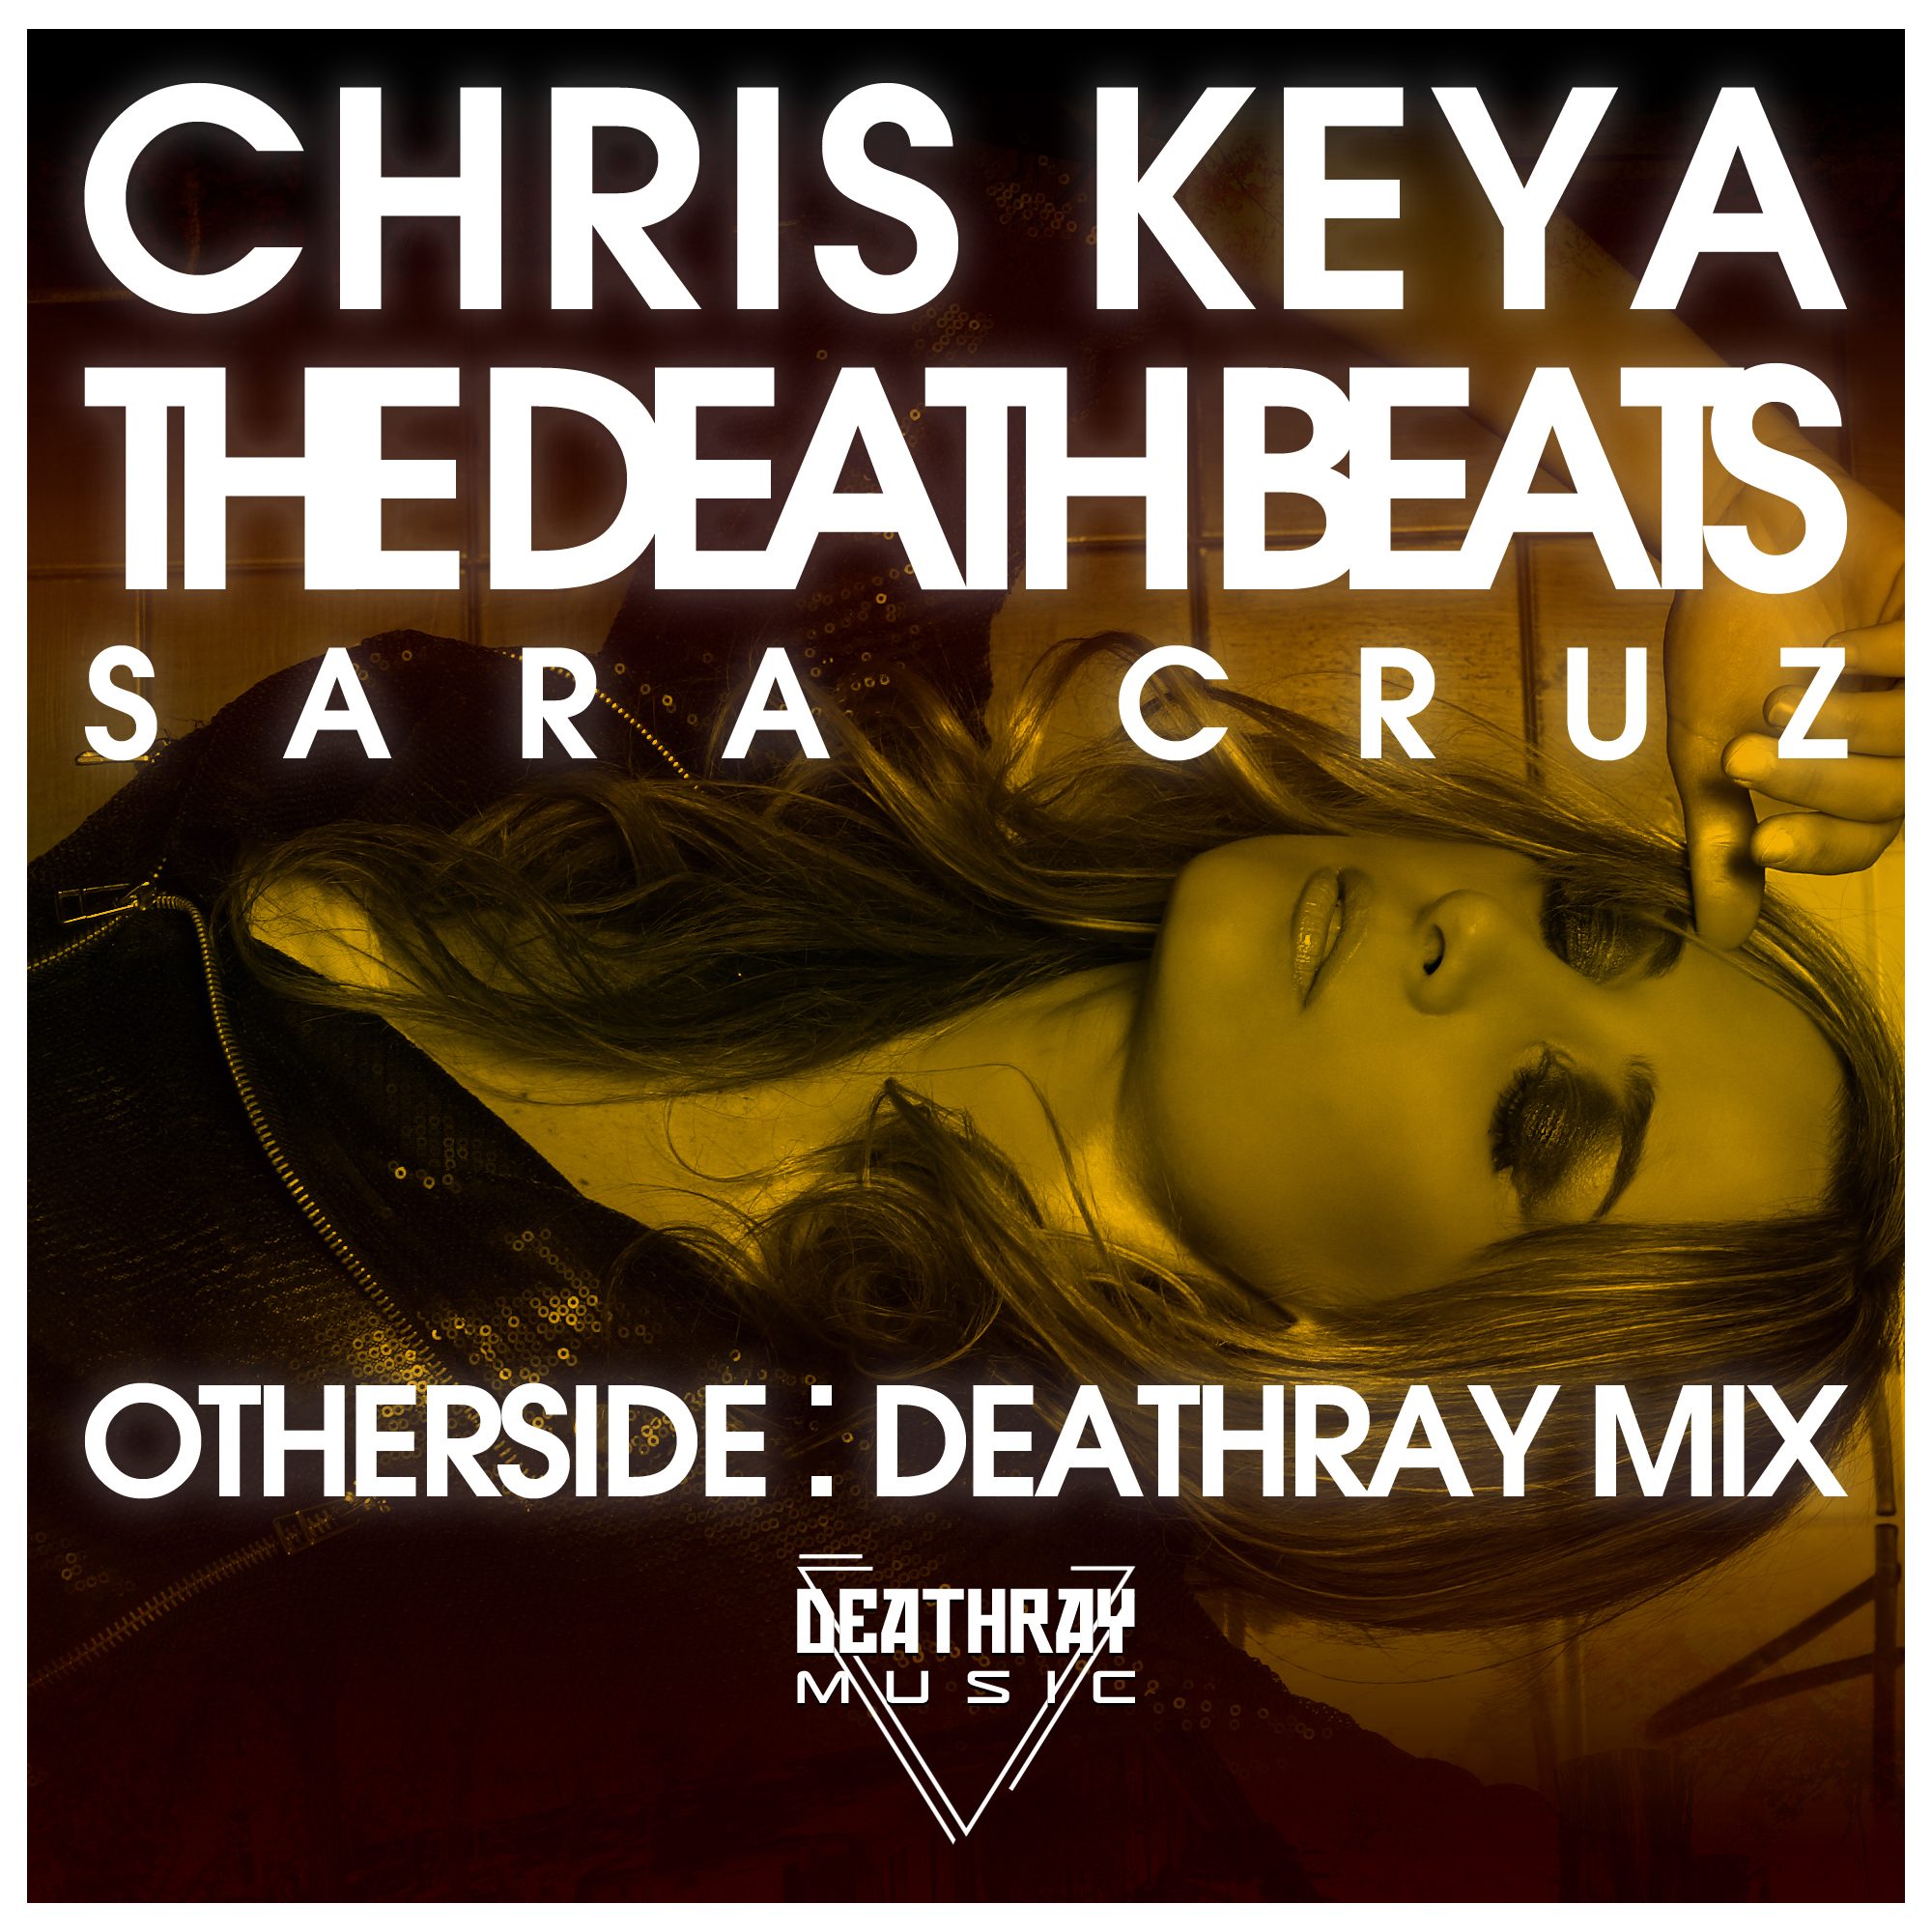 Chris Keya x The Death Beats x Sara Cruz - Otherside - Deathray Mix